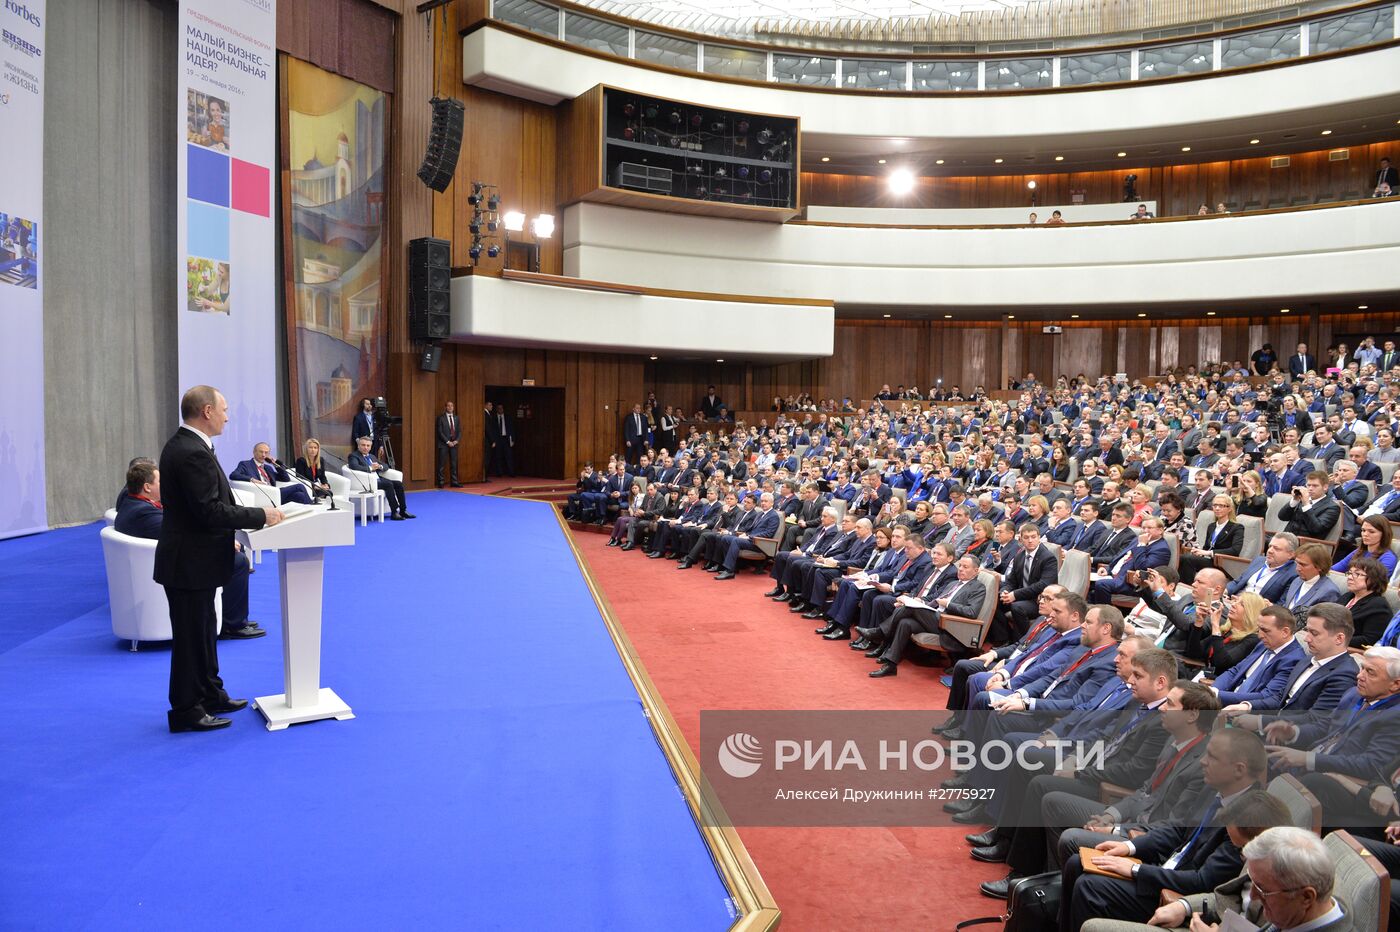 Президент РФ В. Путин принял участие в пленарном заседании всероссийского предпринимательского форума "Малый бизнес – национальная идея?"